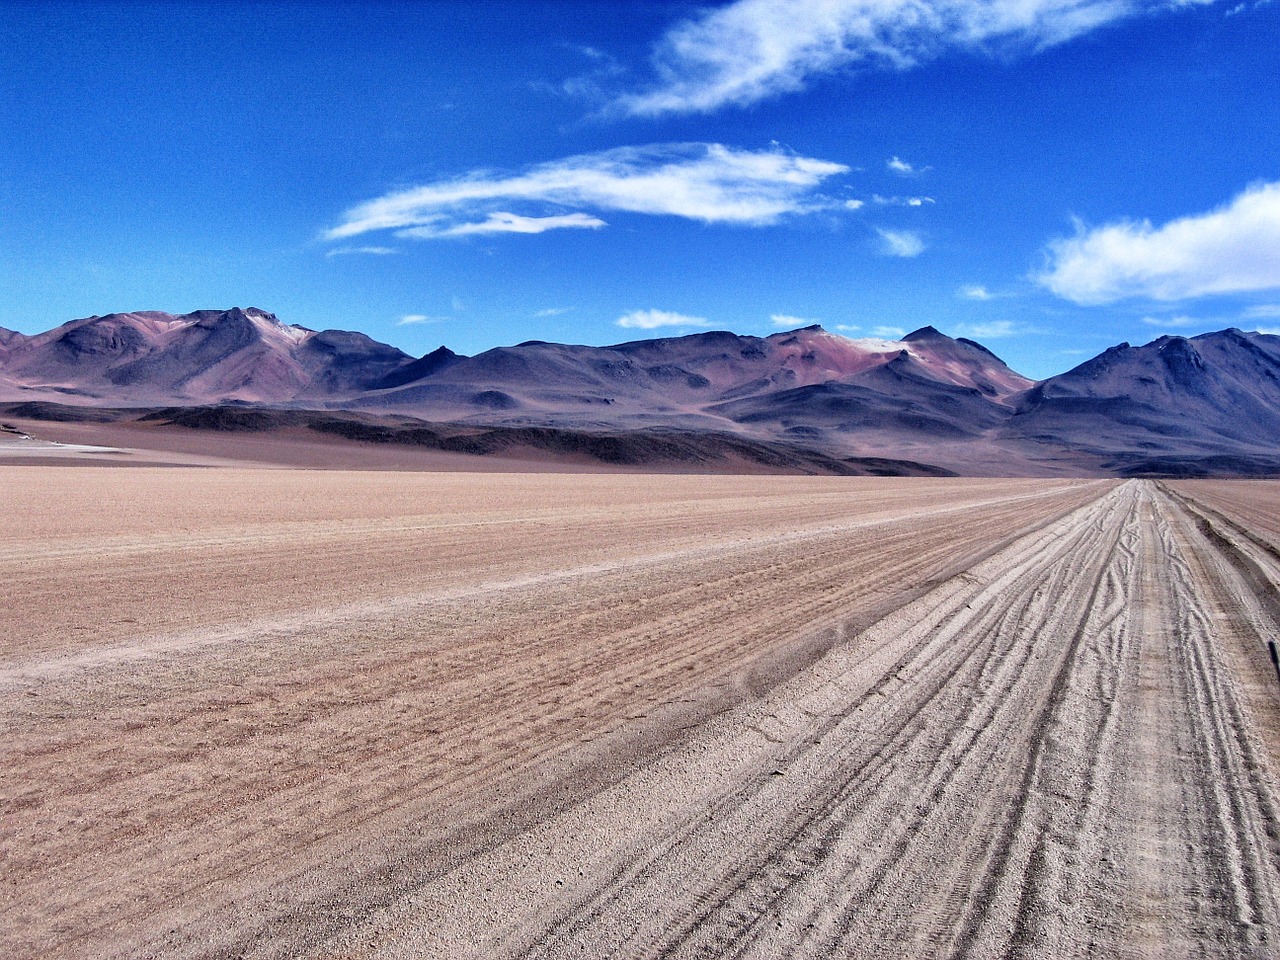 Especial sobre el Desierto de Atacama con la colaboración de Javier Martín Vide